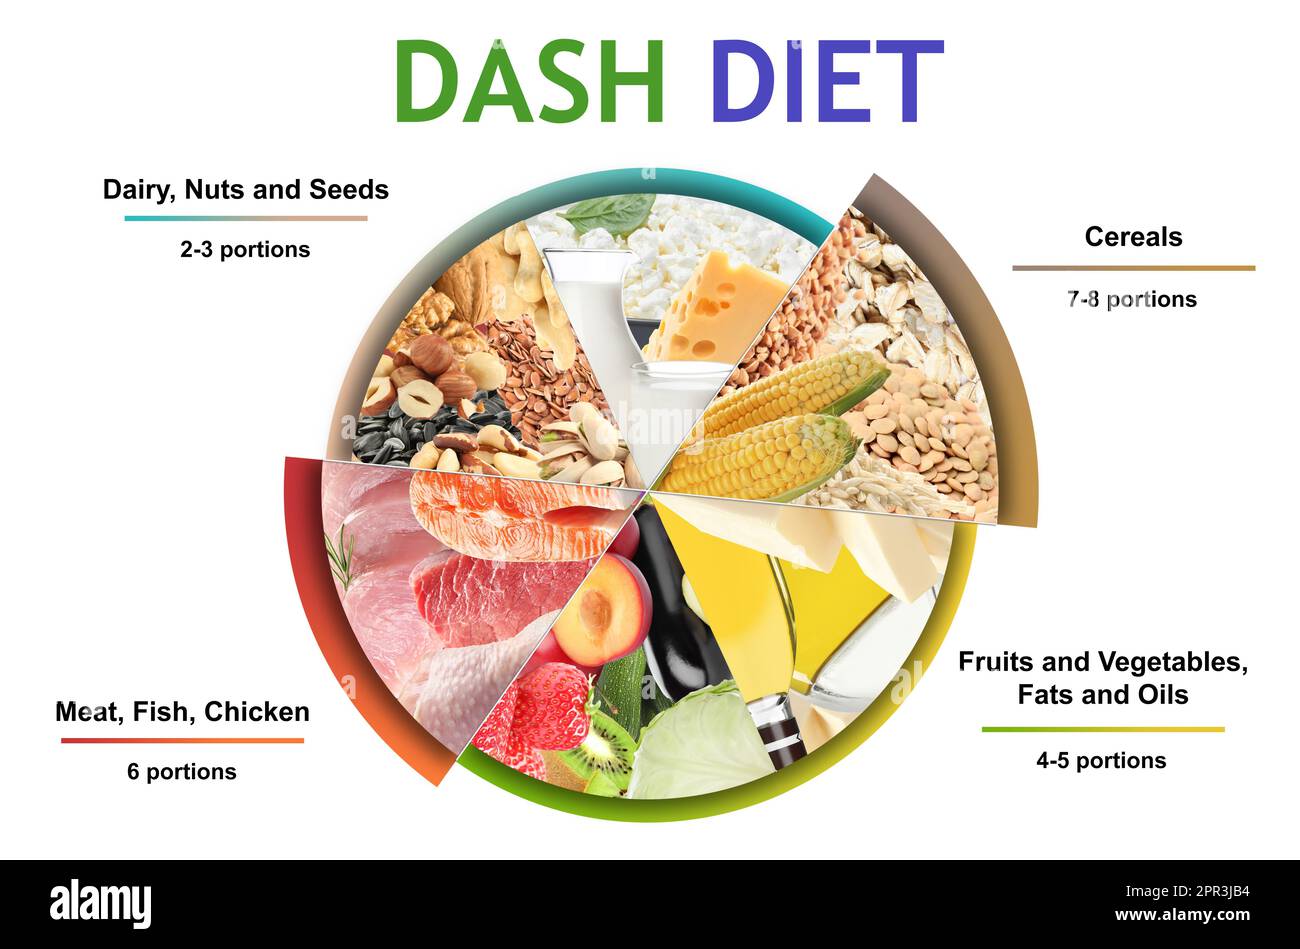 Alimentation équilibrée pour UN régime DASH pour arrêter l'hypertension. Assortiment de différents produits sur fond blanc Banque D'Images